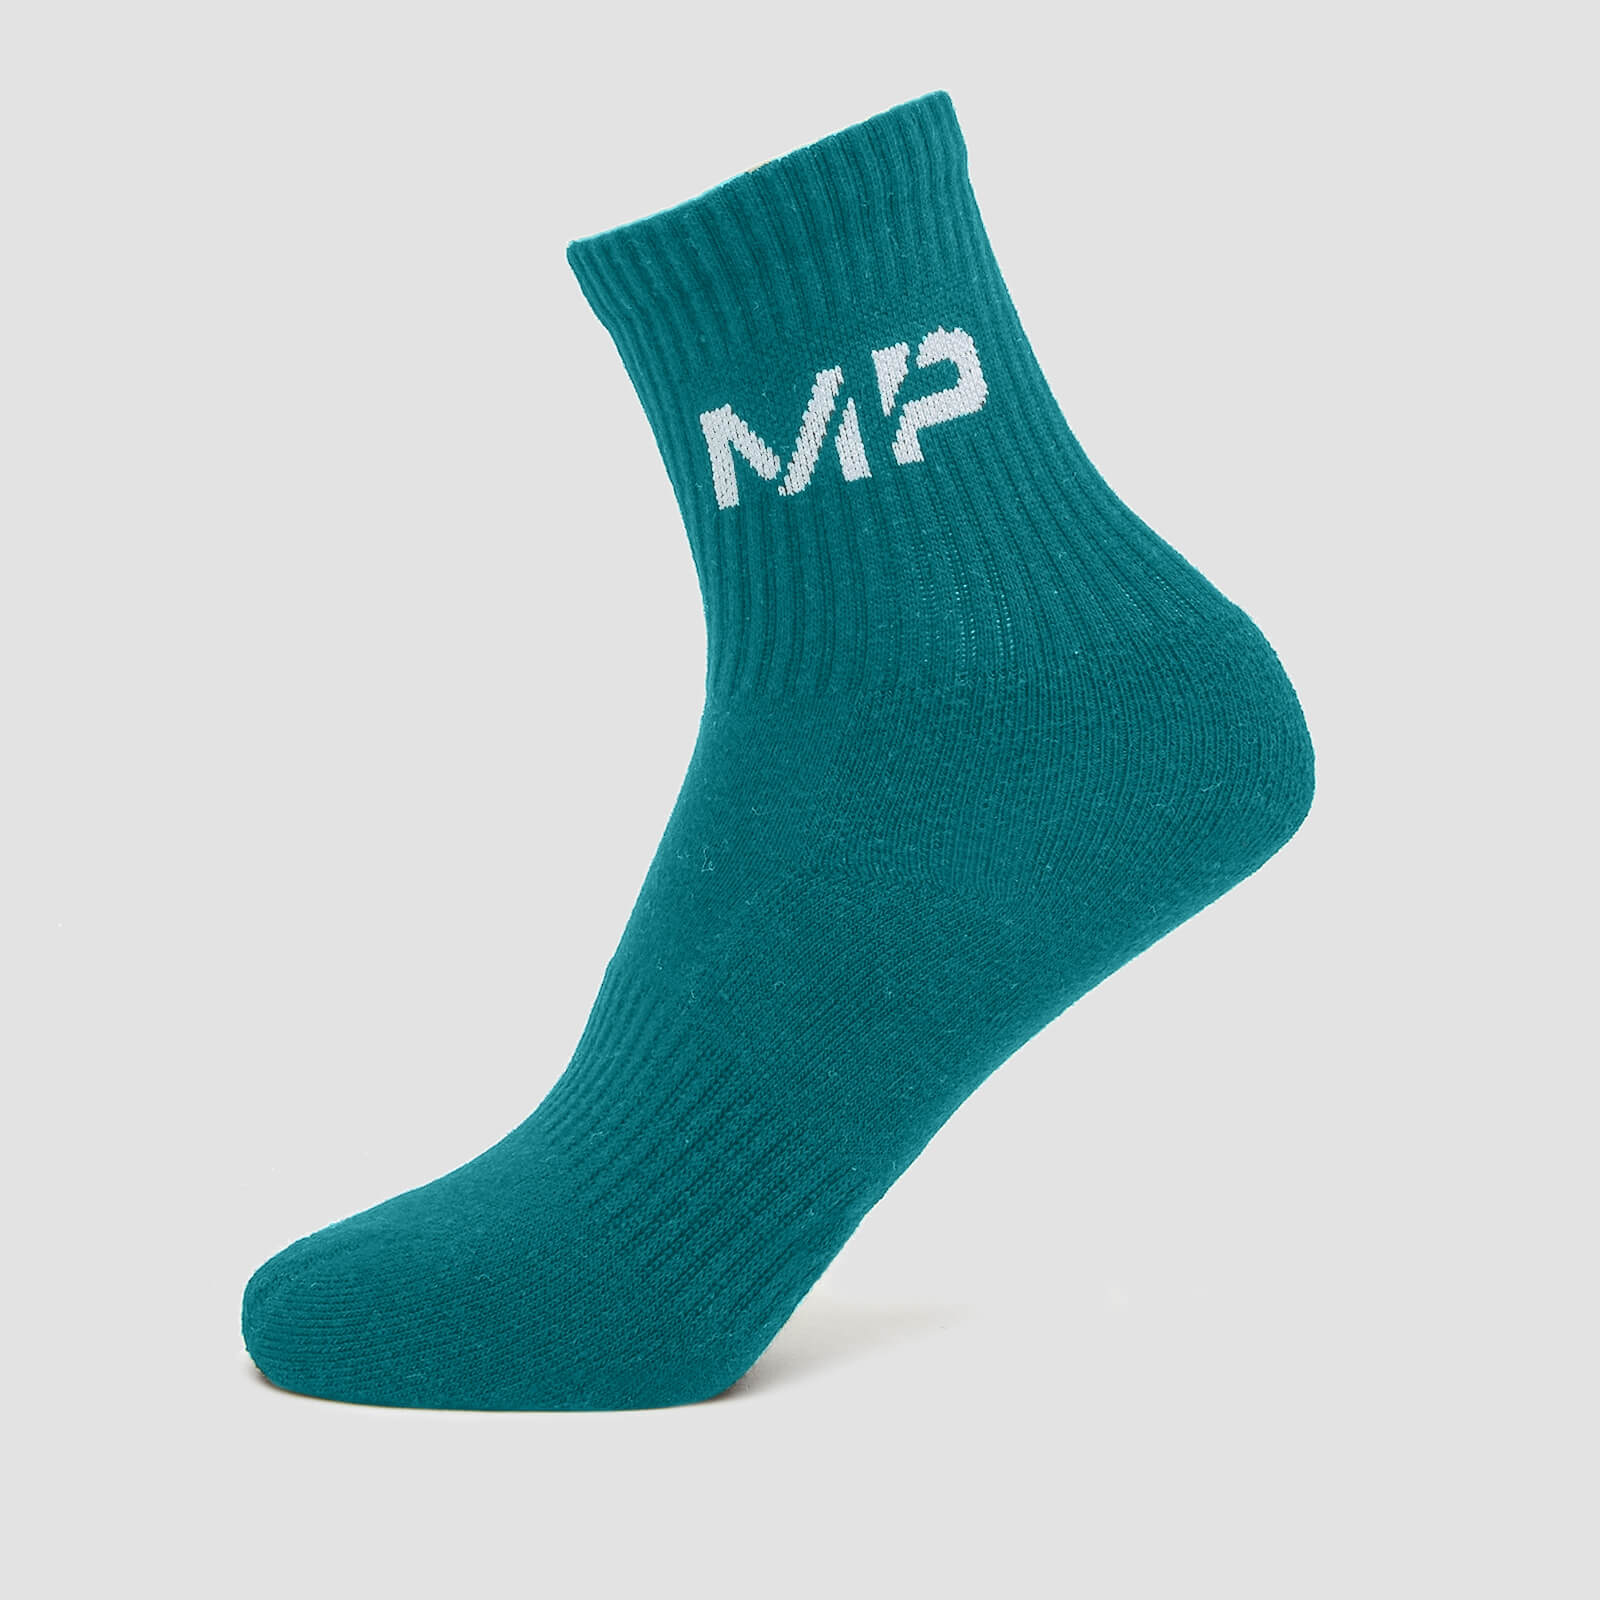 MP 中性中筒襪 - 藍綠